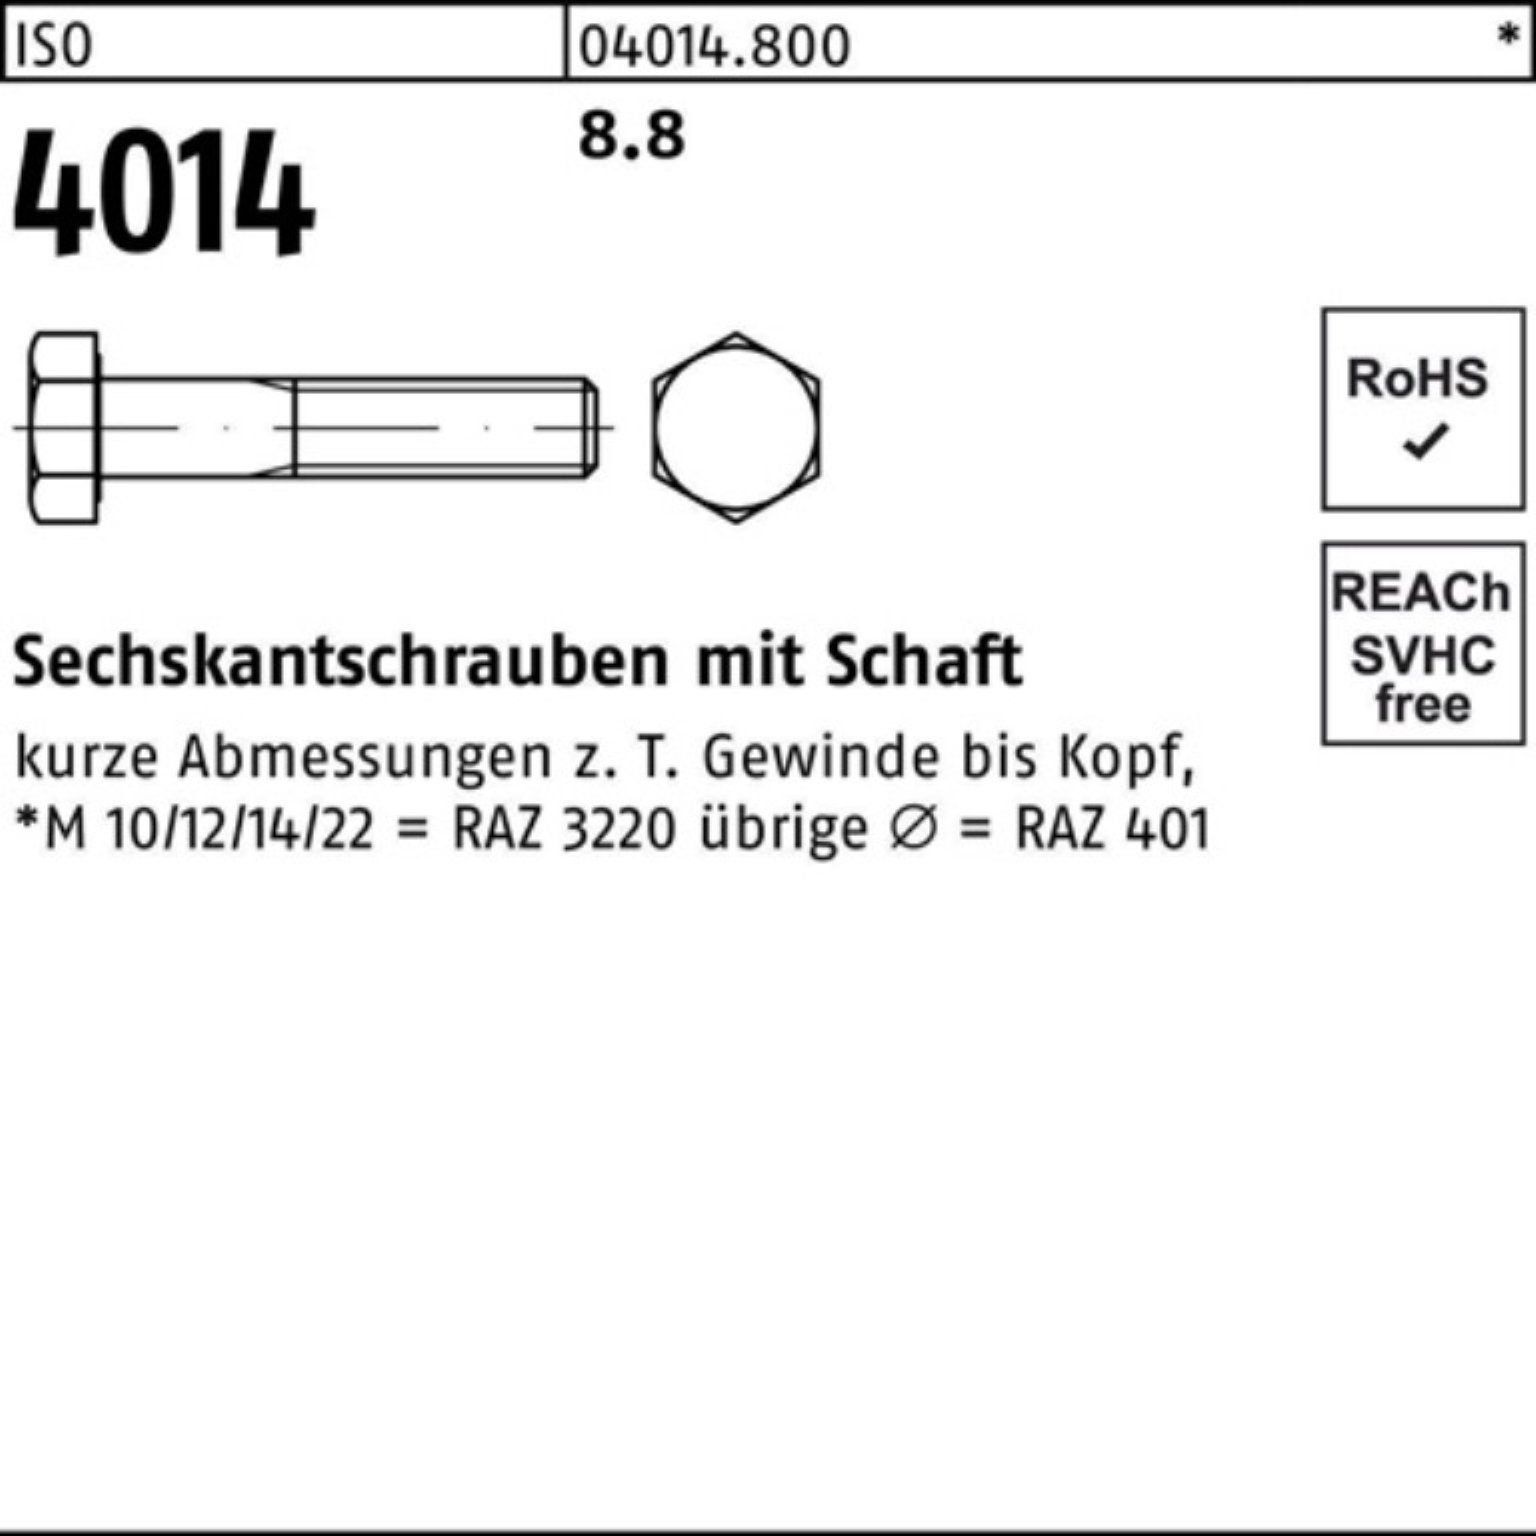 ISO ISO Pack Bufab Sechskantschraube 4014 130 Schaft 100er 8.8 Sechskantschraube M56x Stück 1